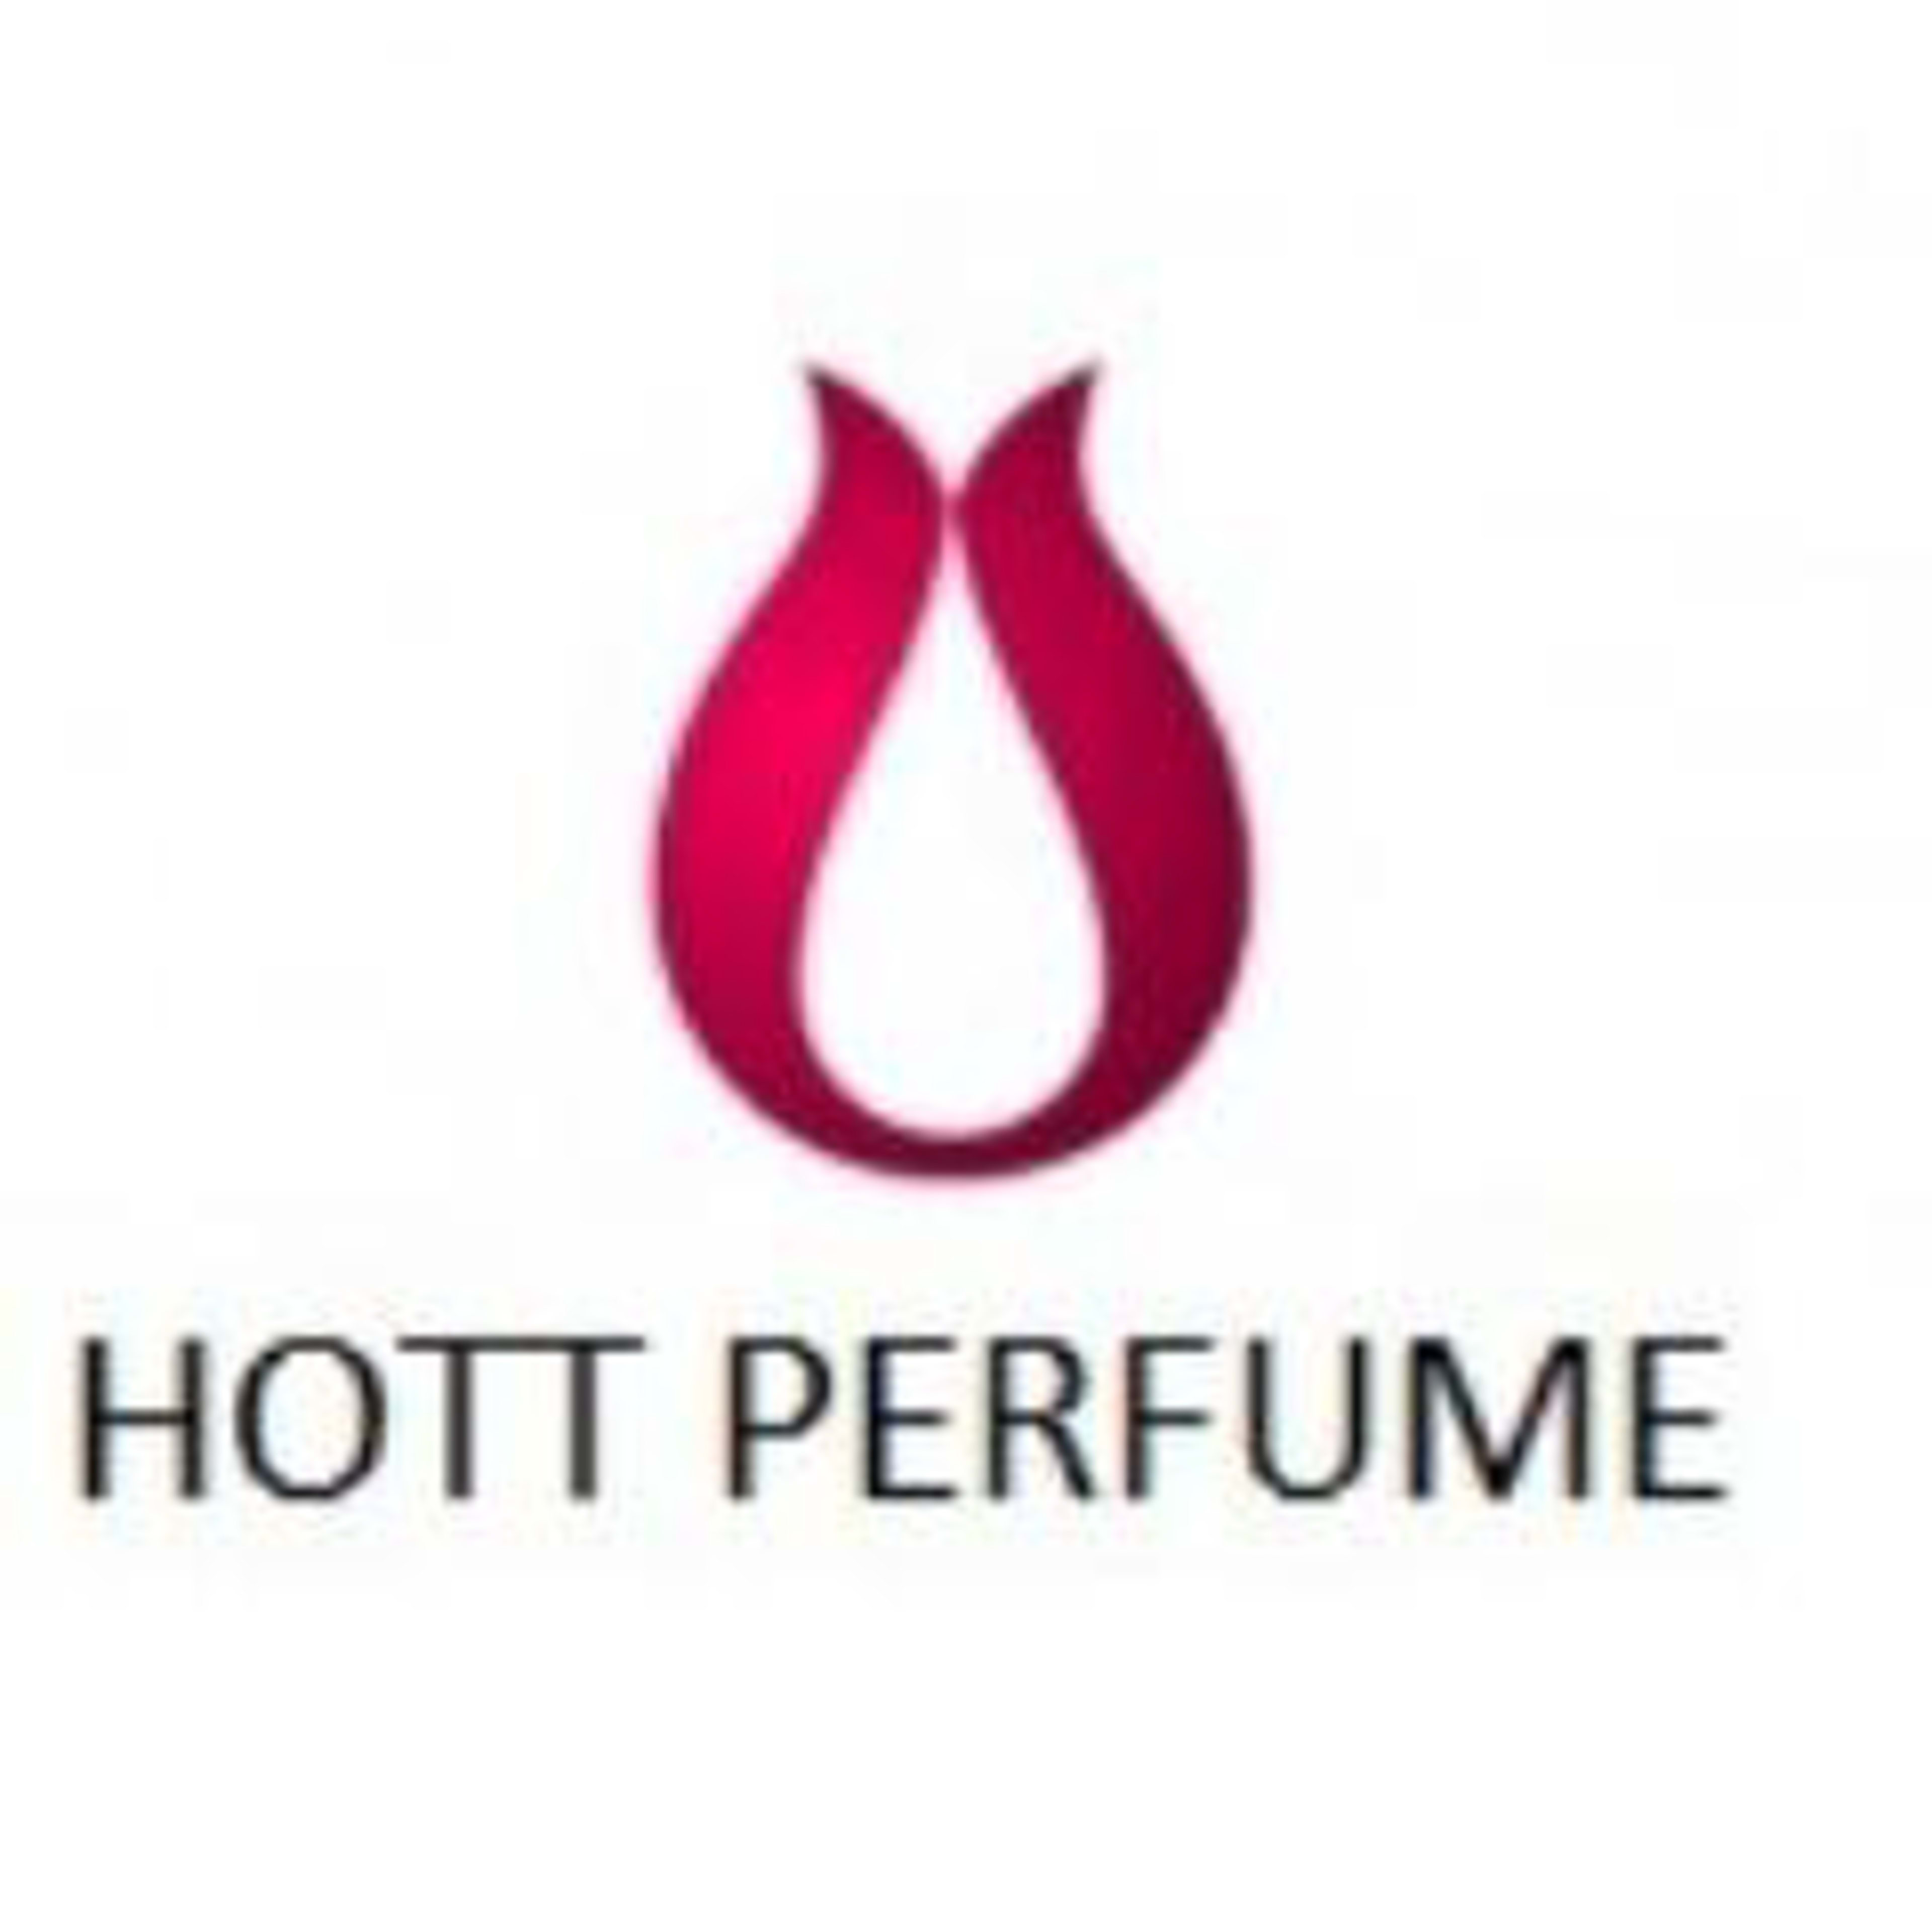 HottPerfume